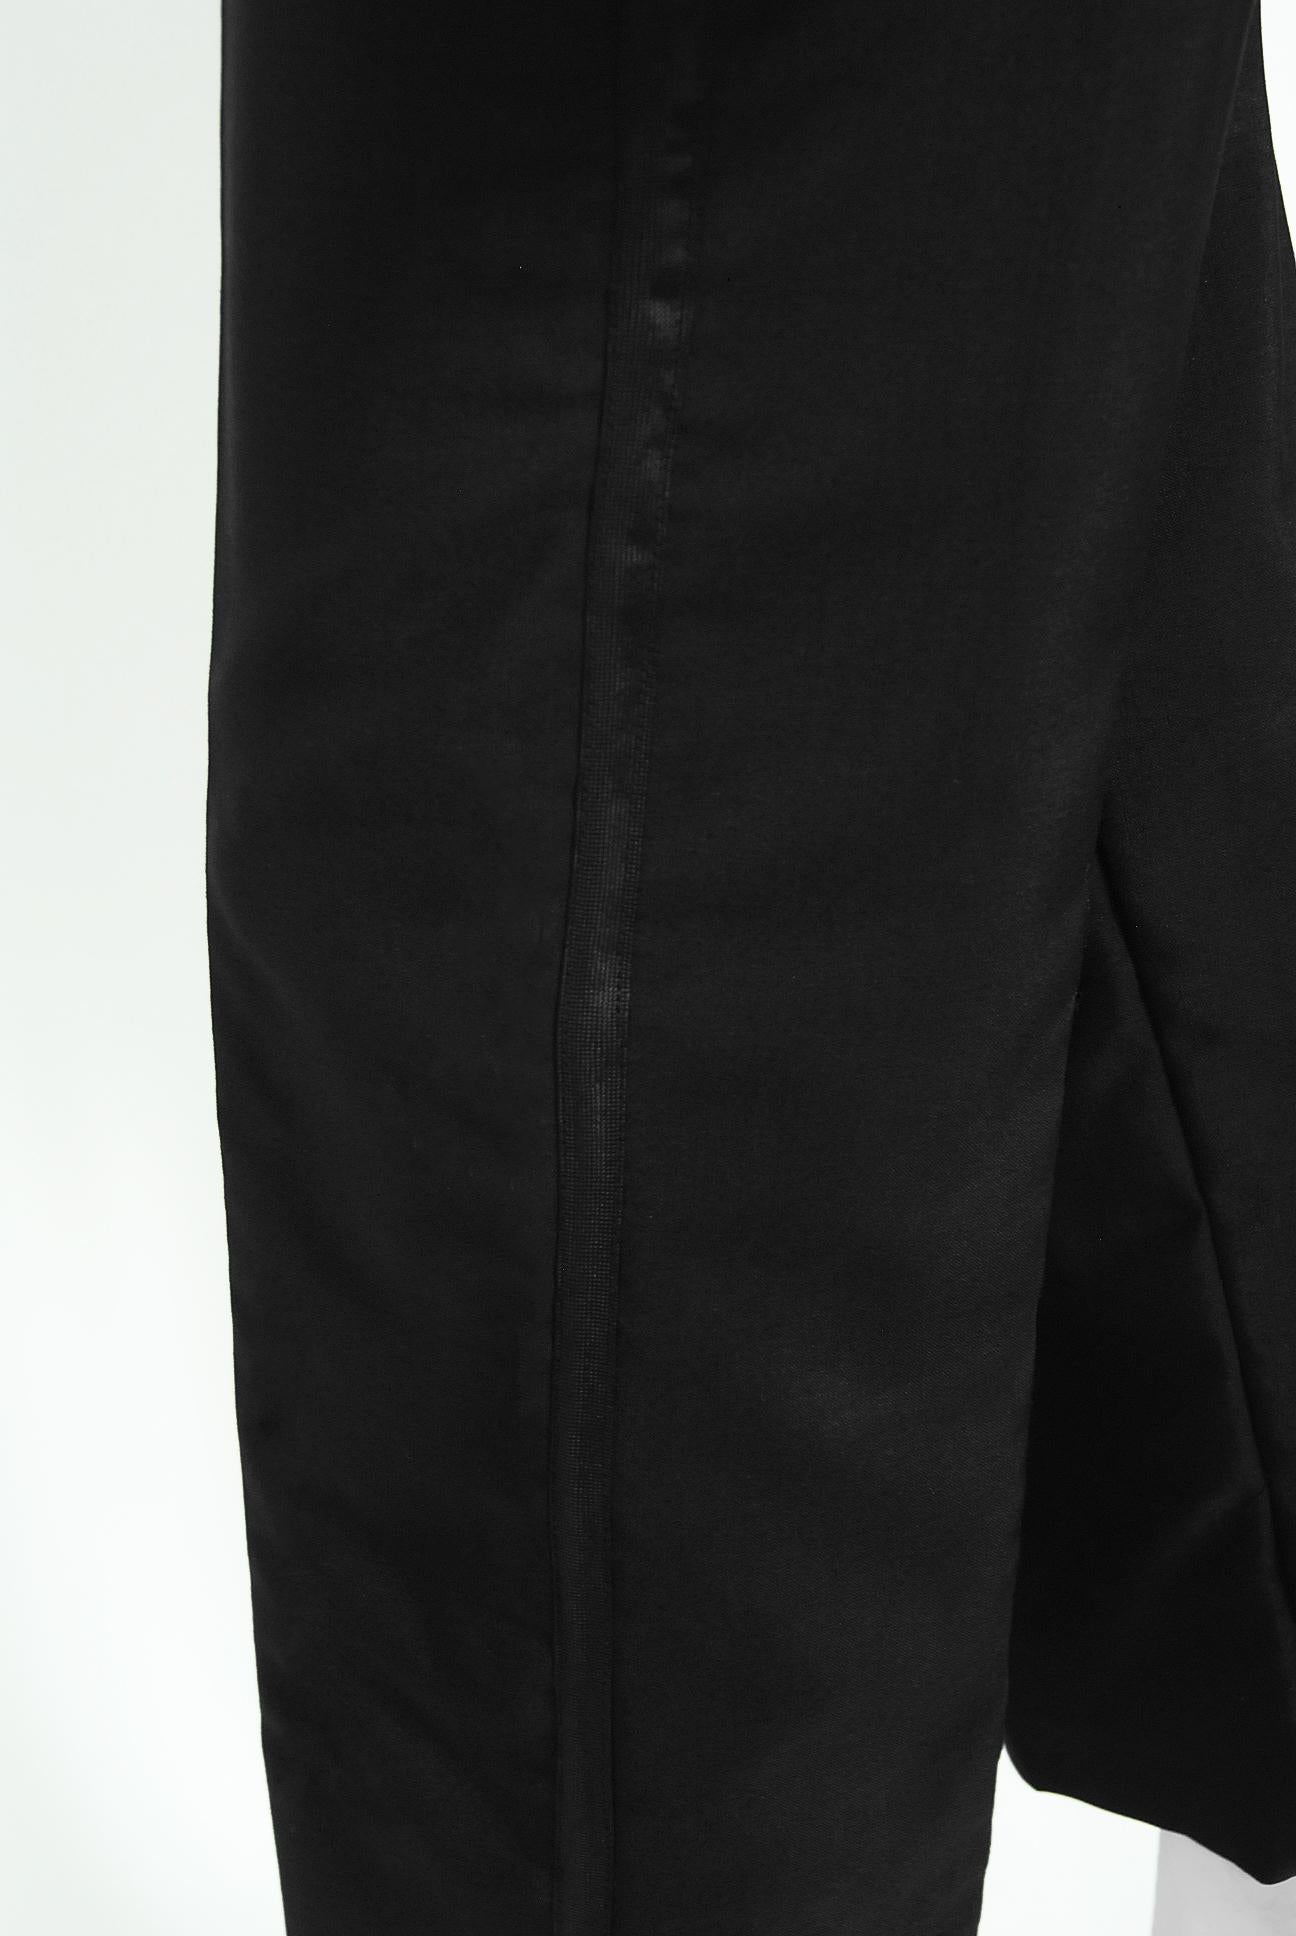 Vintage 1968 Yves Saint Laurent Le Smoking Tuxedo Black Gabardine Pant Suit 4